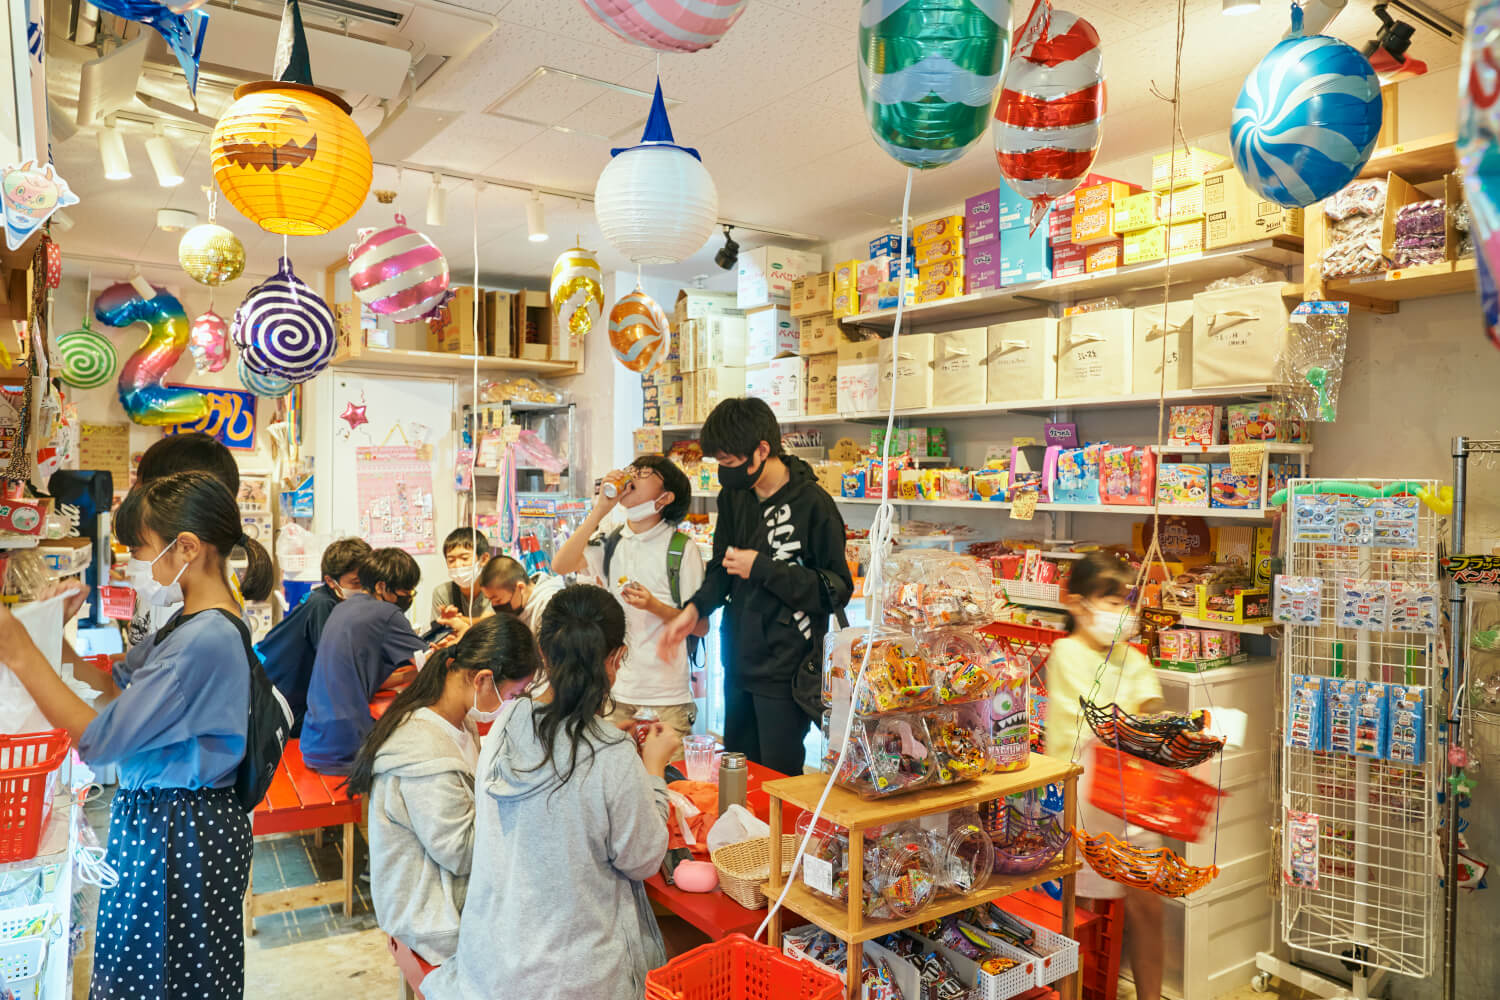 子供たちの社交場『駄菓子乃瀧ちゃん』。10円の駄菓子を食べながらゲームに興じる。